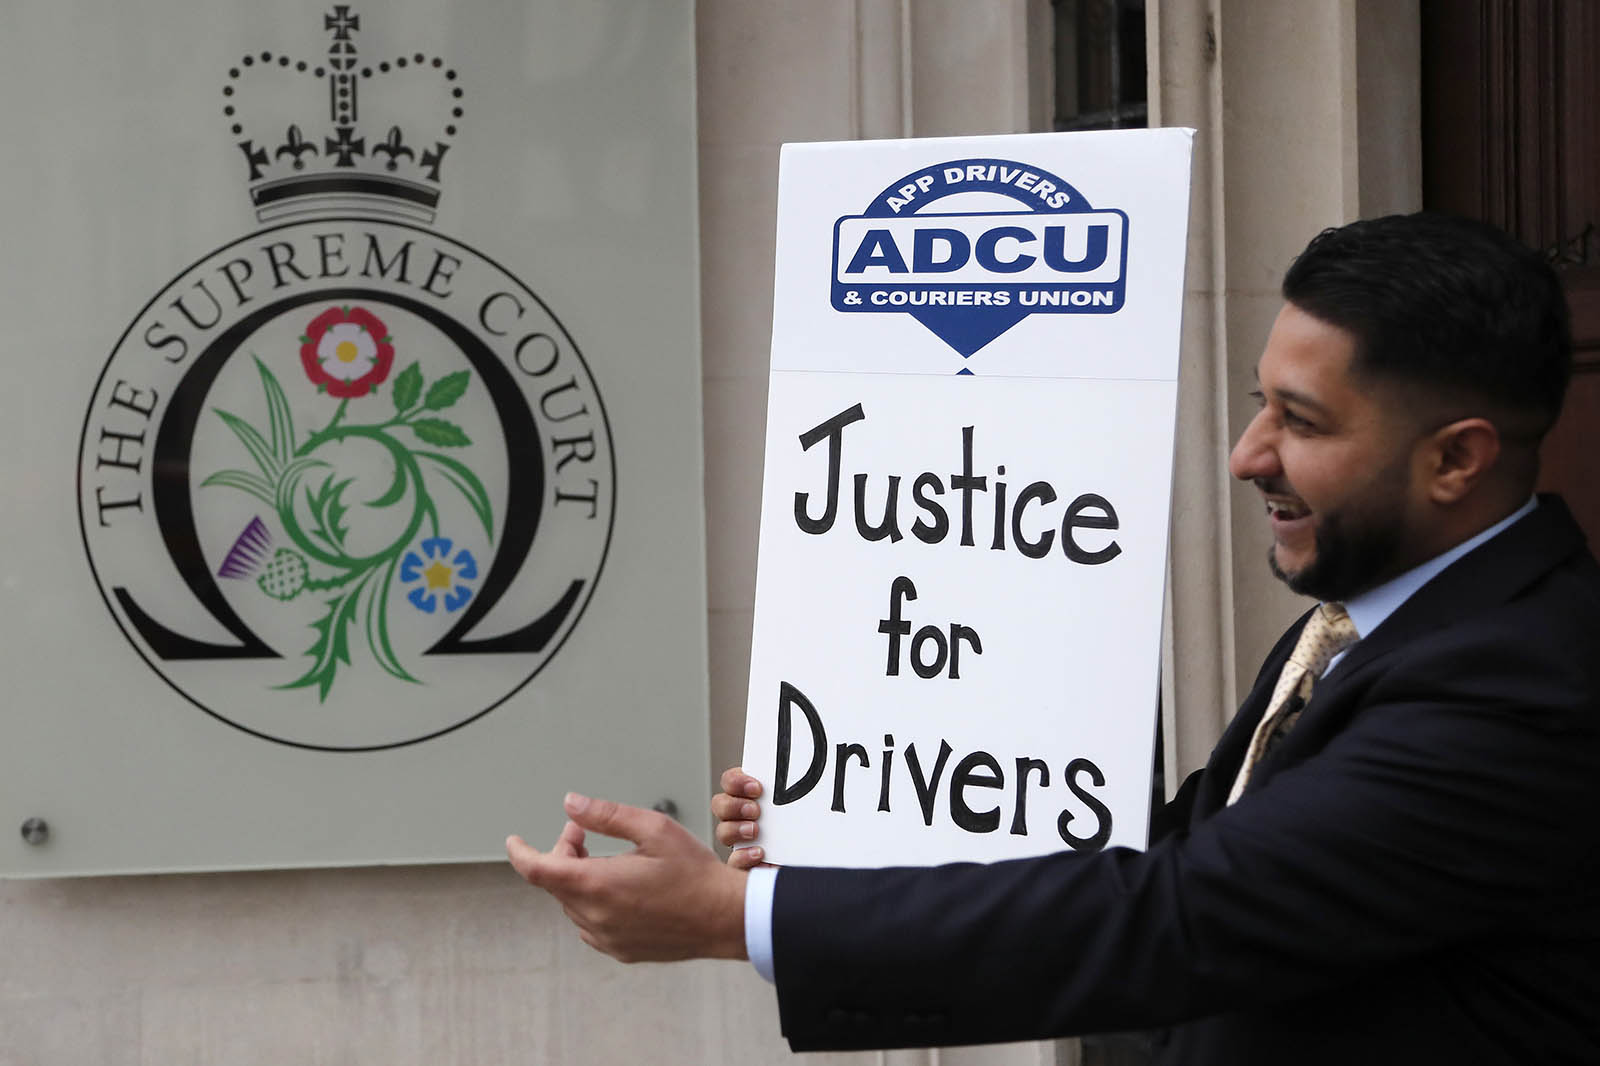 נהגי אובר באיגוד ADCU לנהגי אפליקציות חוגגים בעודם מאזינים להחלטת בית המשפט בטאבלט מחוץ לבית המשפט העליון. (צילום: AP Photo/Frank Augstein)